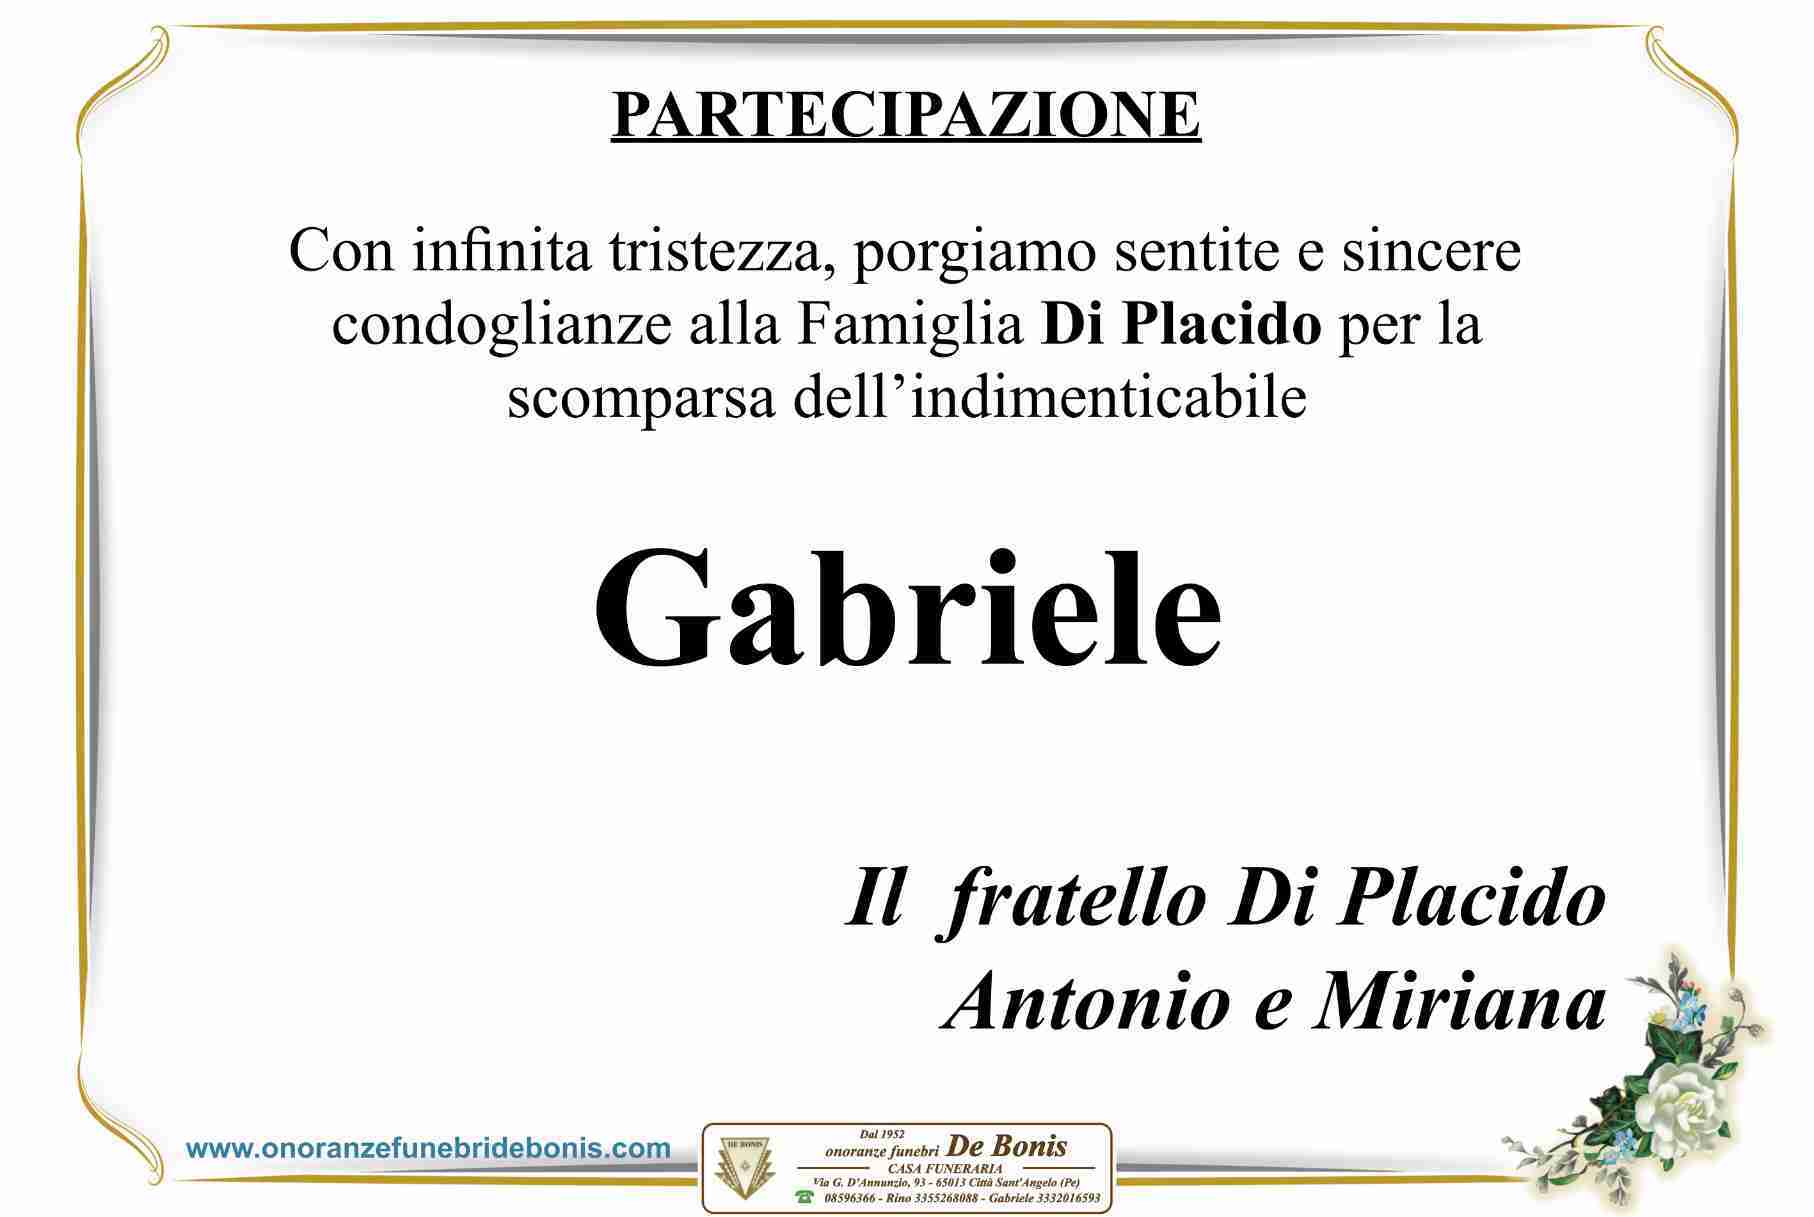 Gabriele Di Placido